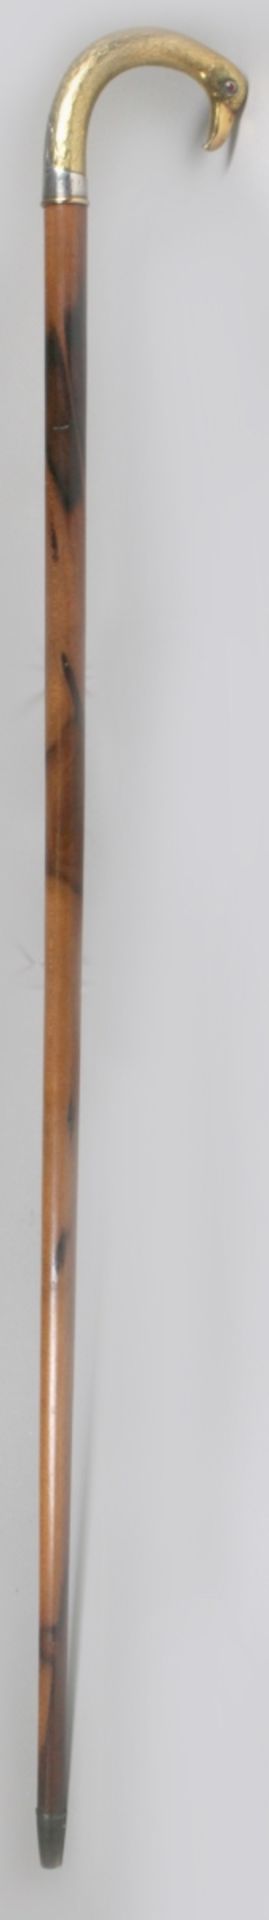 Spazierstock, wohl Belgien, um 1920, brauner Holzschaft, Griff aus Silber, vergoldet, - Bild 2 aus 5